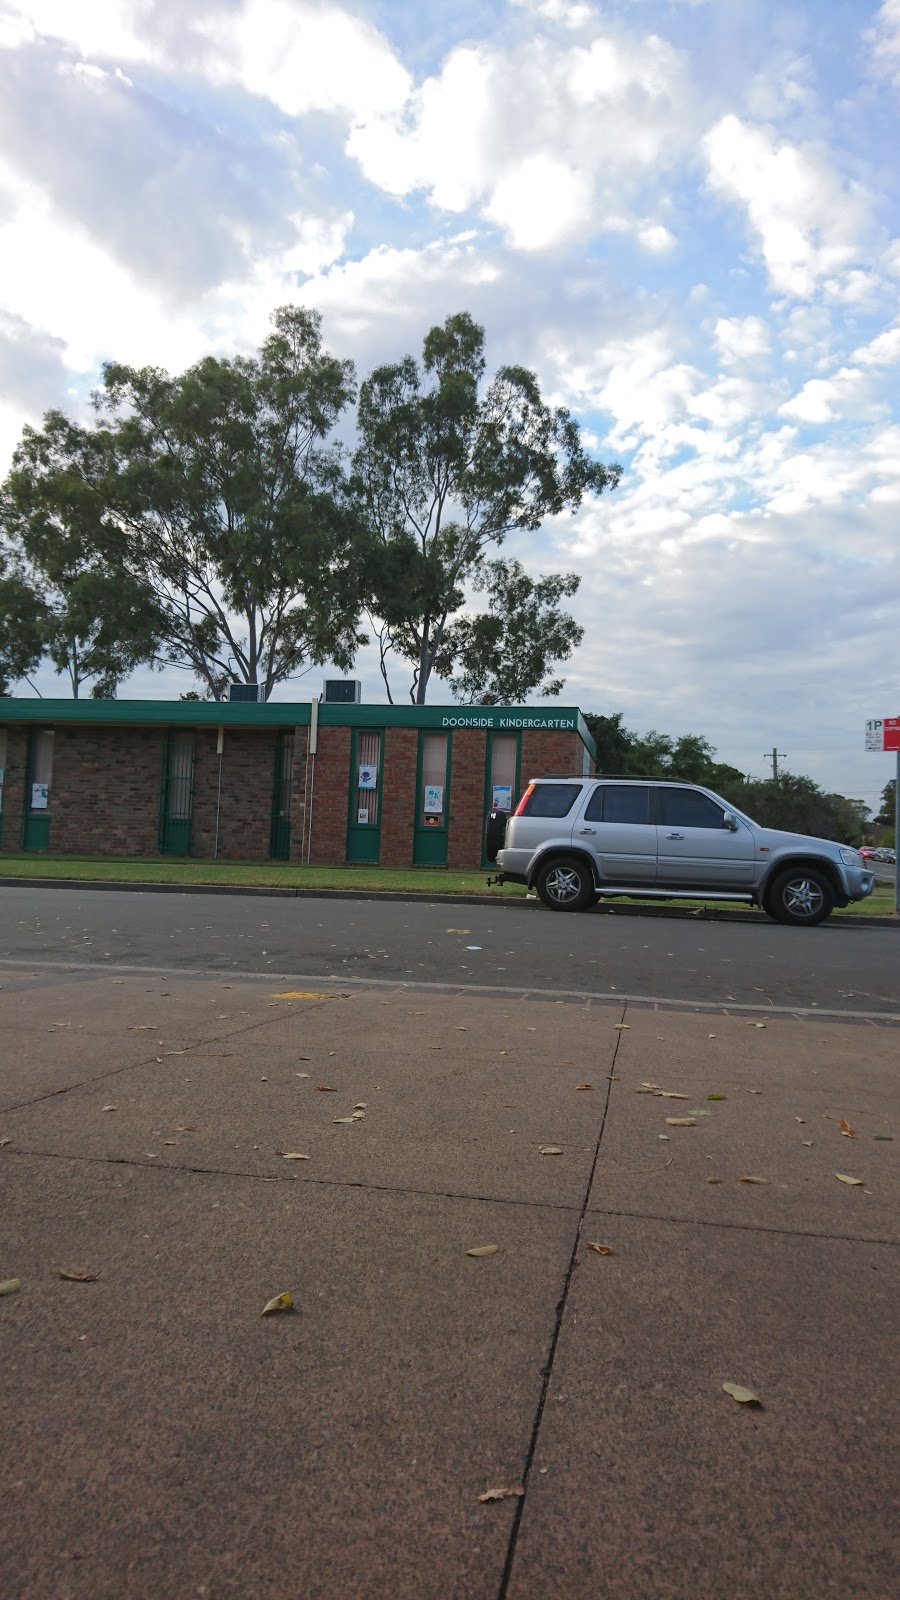 Doonside Kindergarten | school | 32 Hill End Rd, Doonside NSW 2767, Australia | 0296212452 OR +61 2 9621 2452